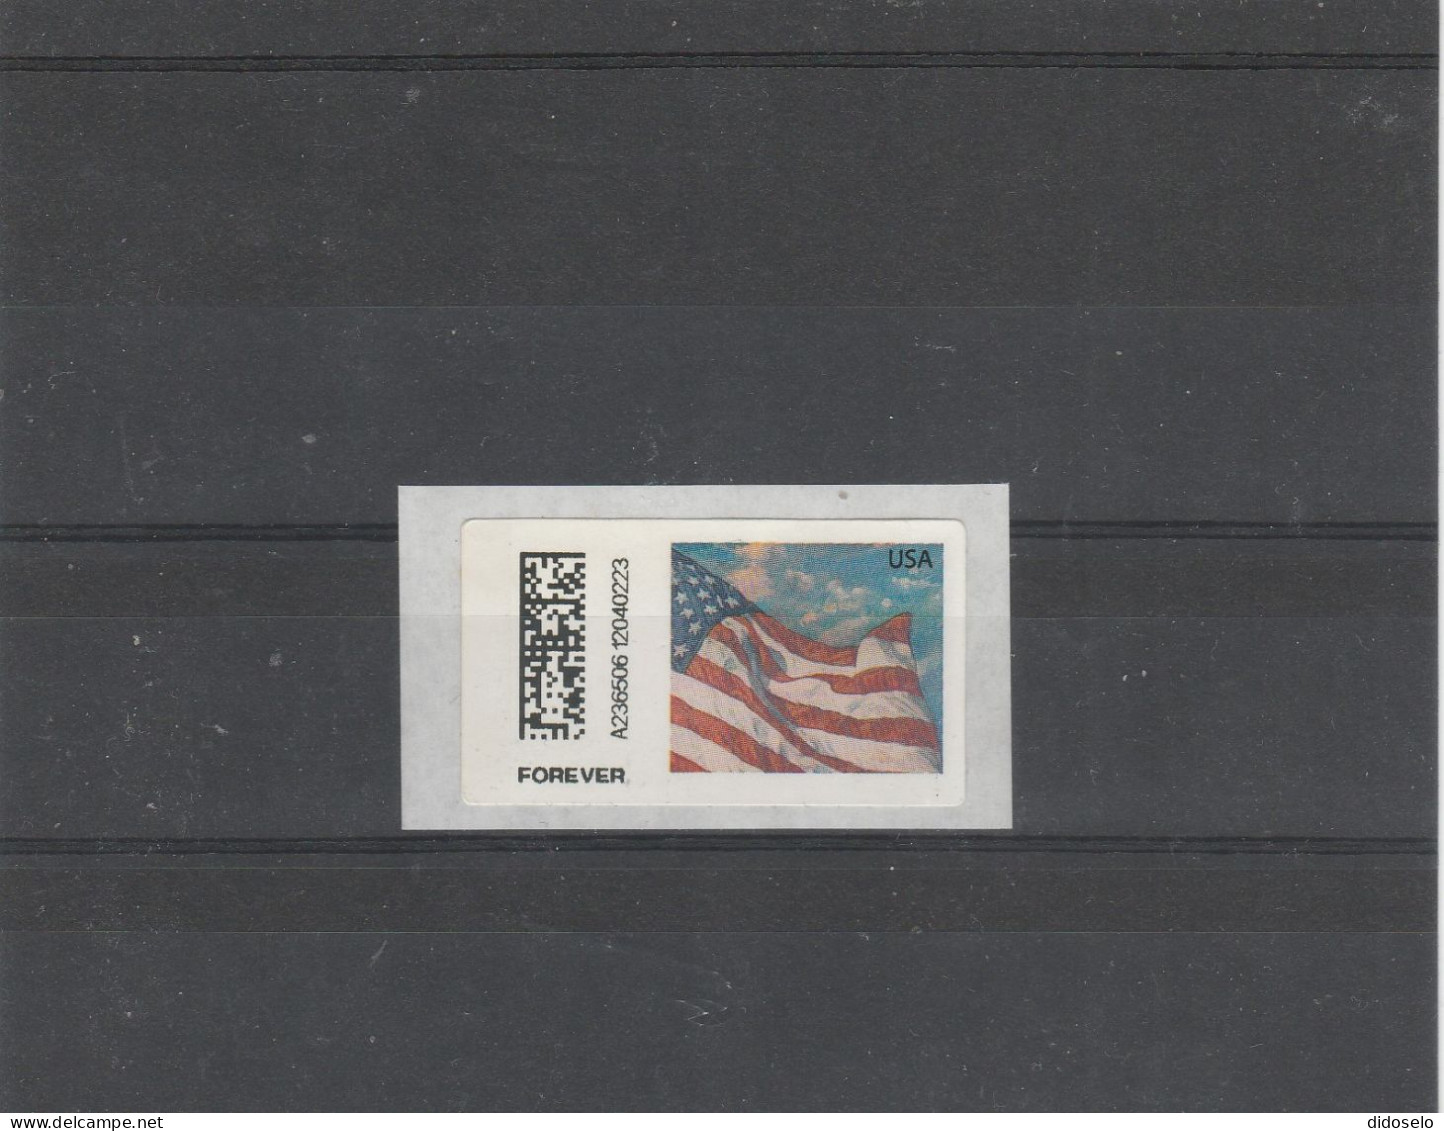 USA - 2023 - ATM Label / Forever / Mint - Vignette [ATM]